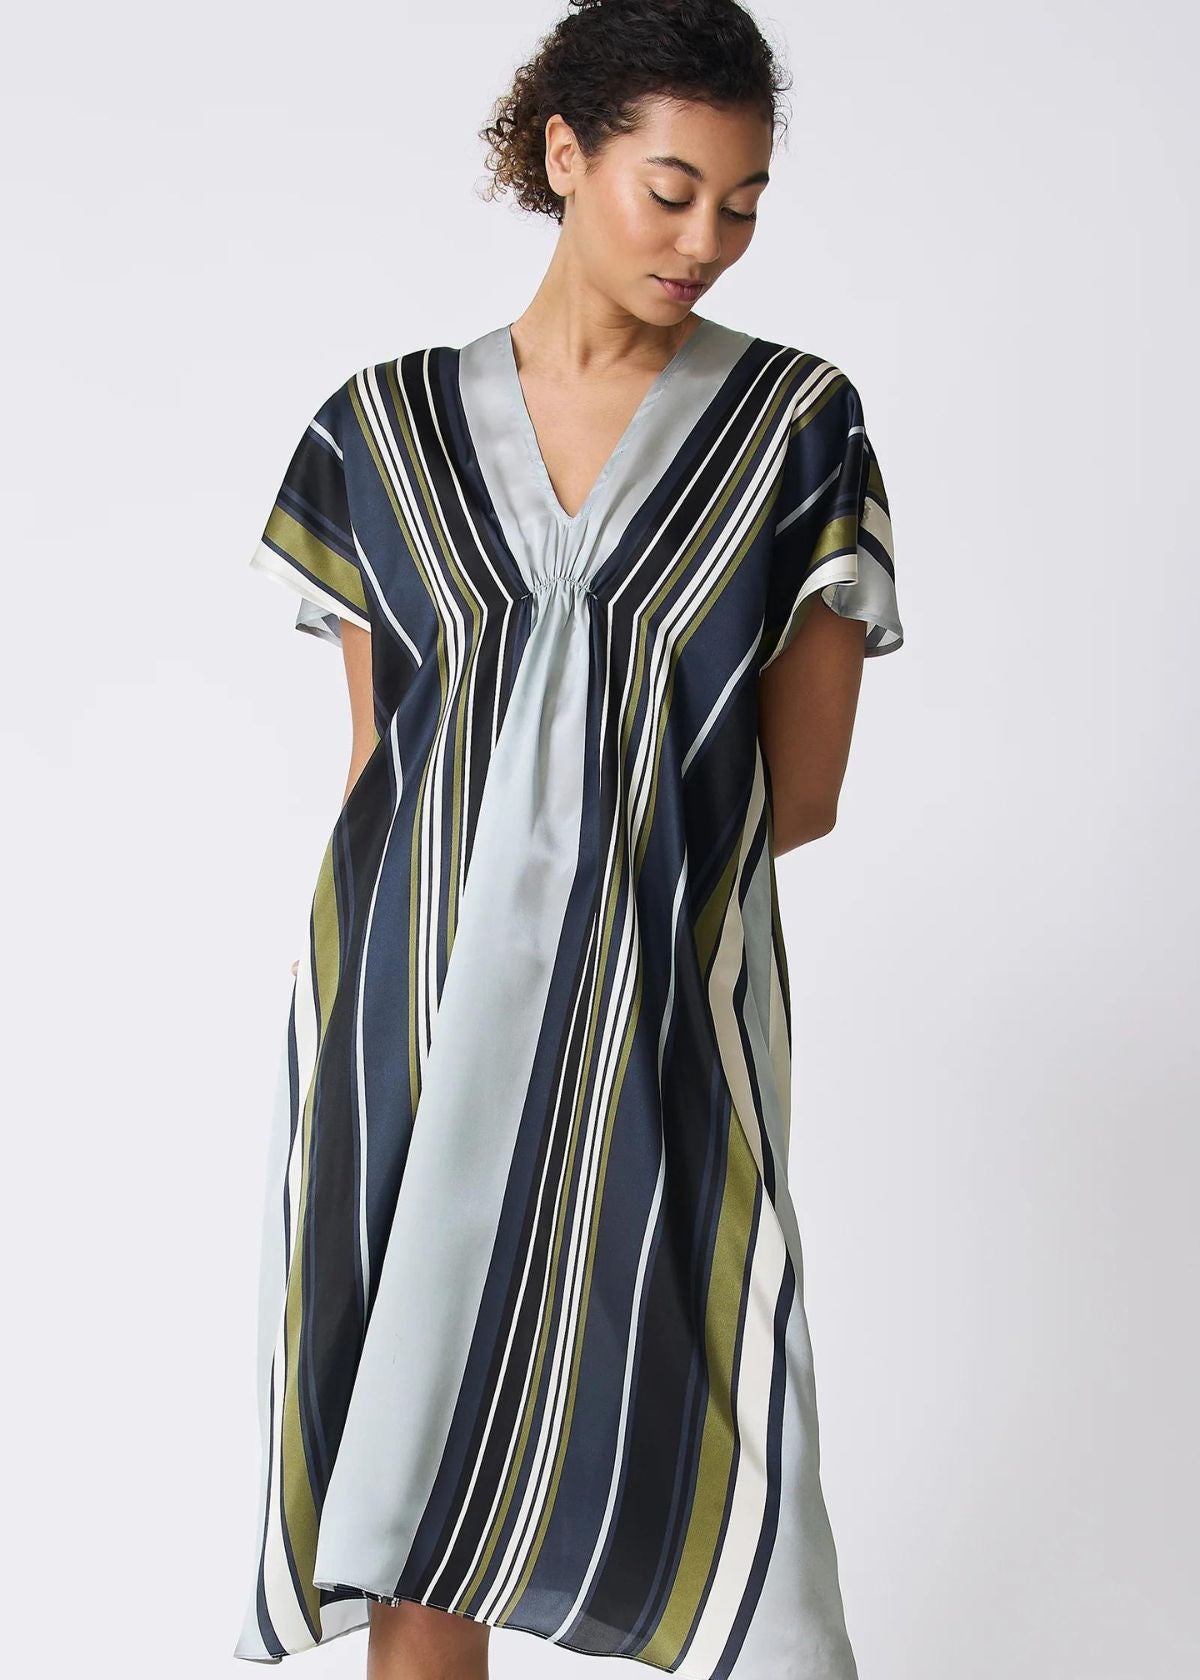 KAL RIEMAN Vanna Gather Front Dress - Multi Stripe